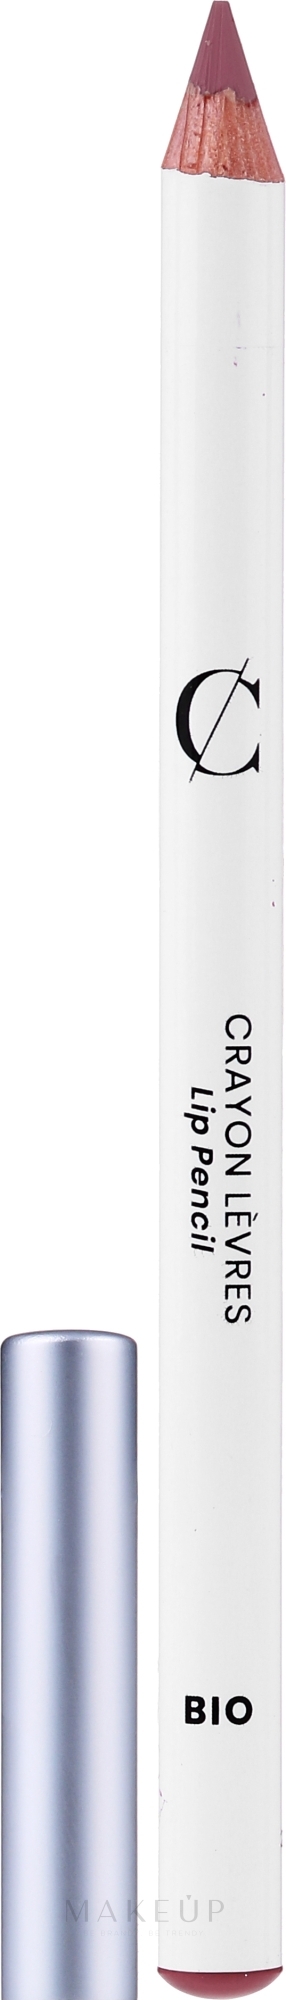 Konturenstift für Lippen und Augen - Couleur Caramel Lip Pencil — Bild 144 - Aschrose